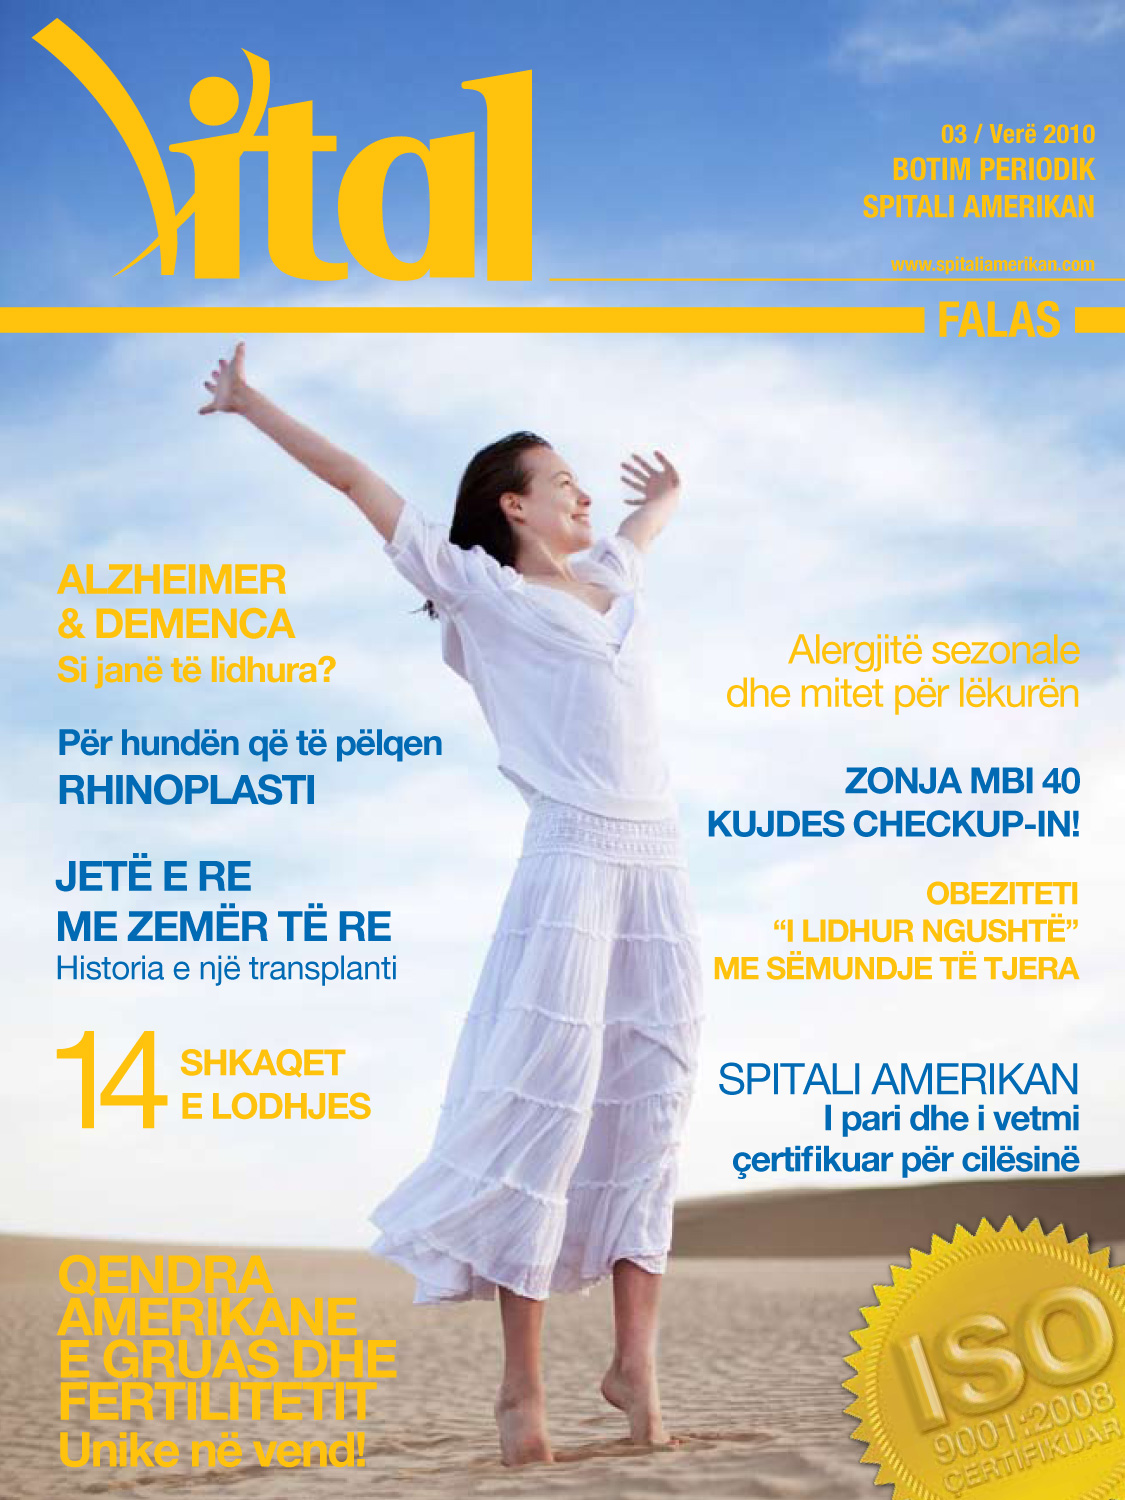 revista_vital_3